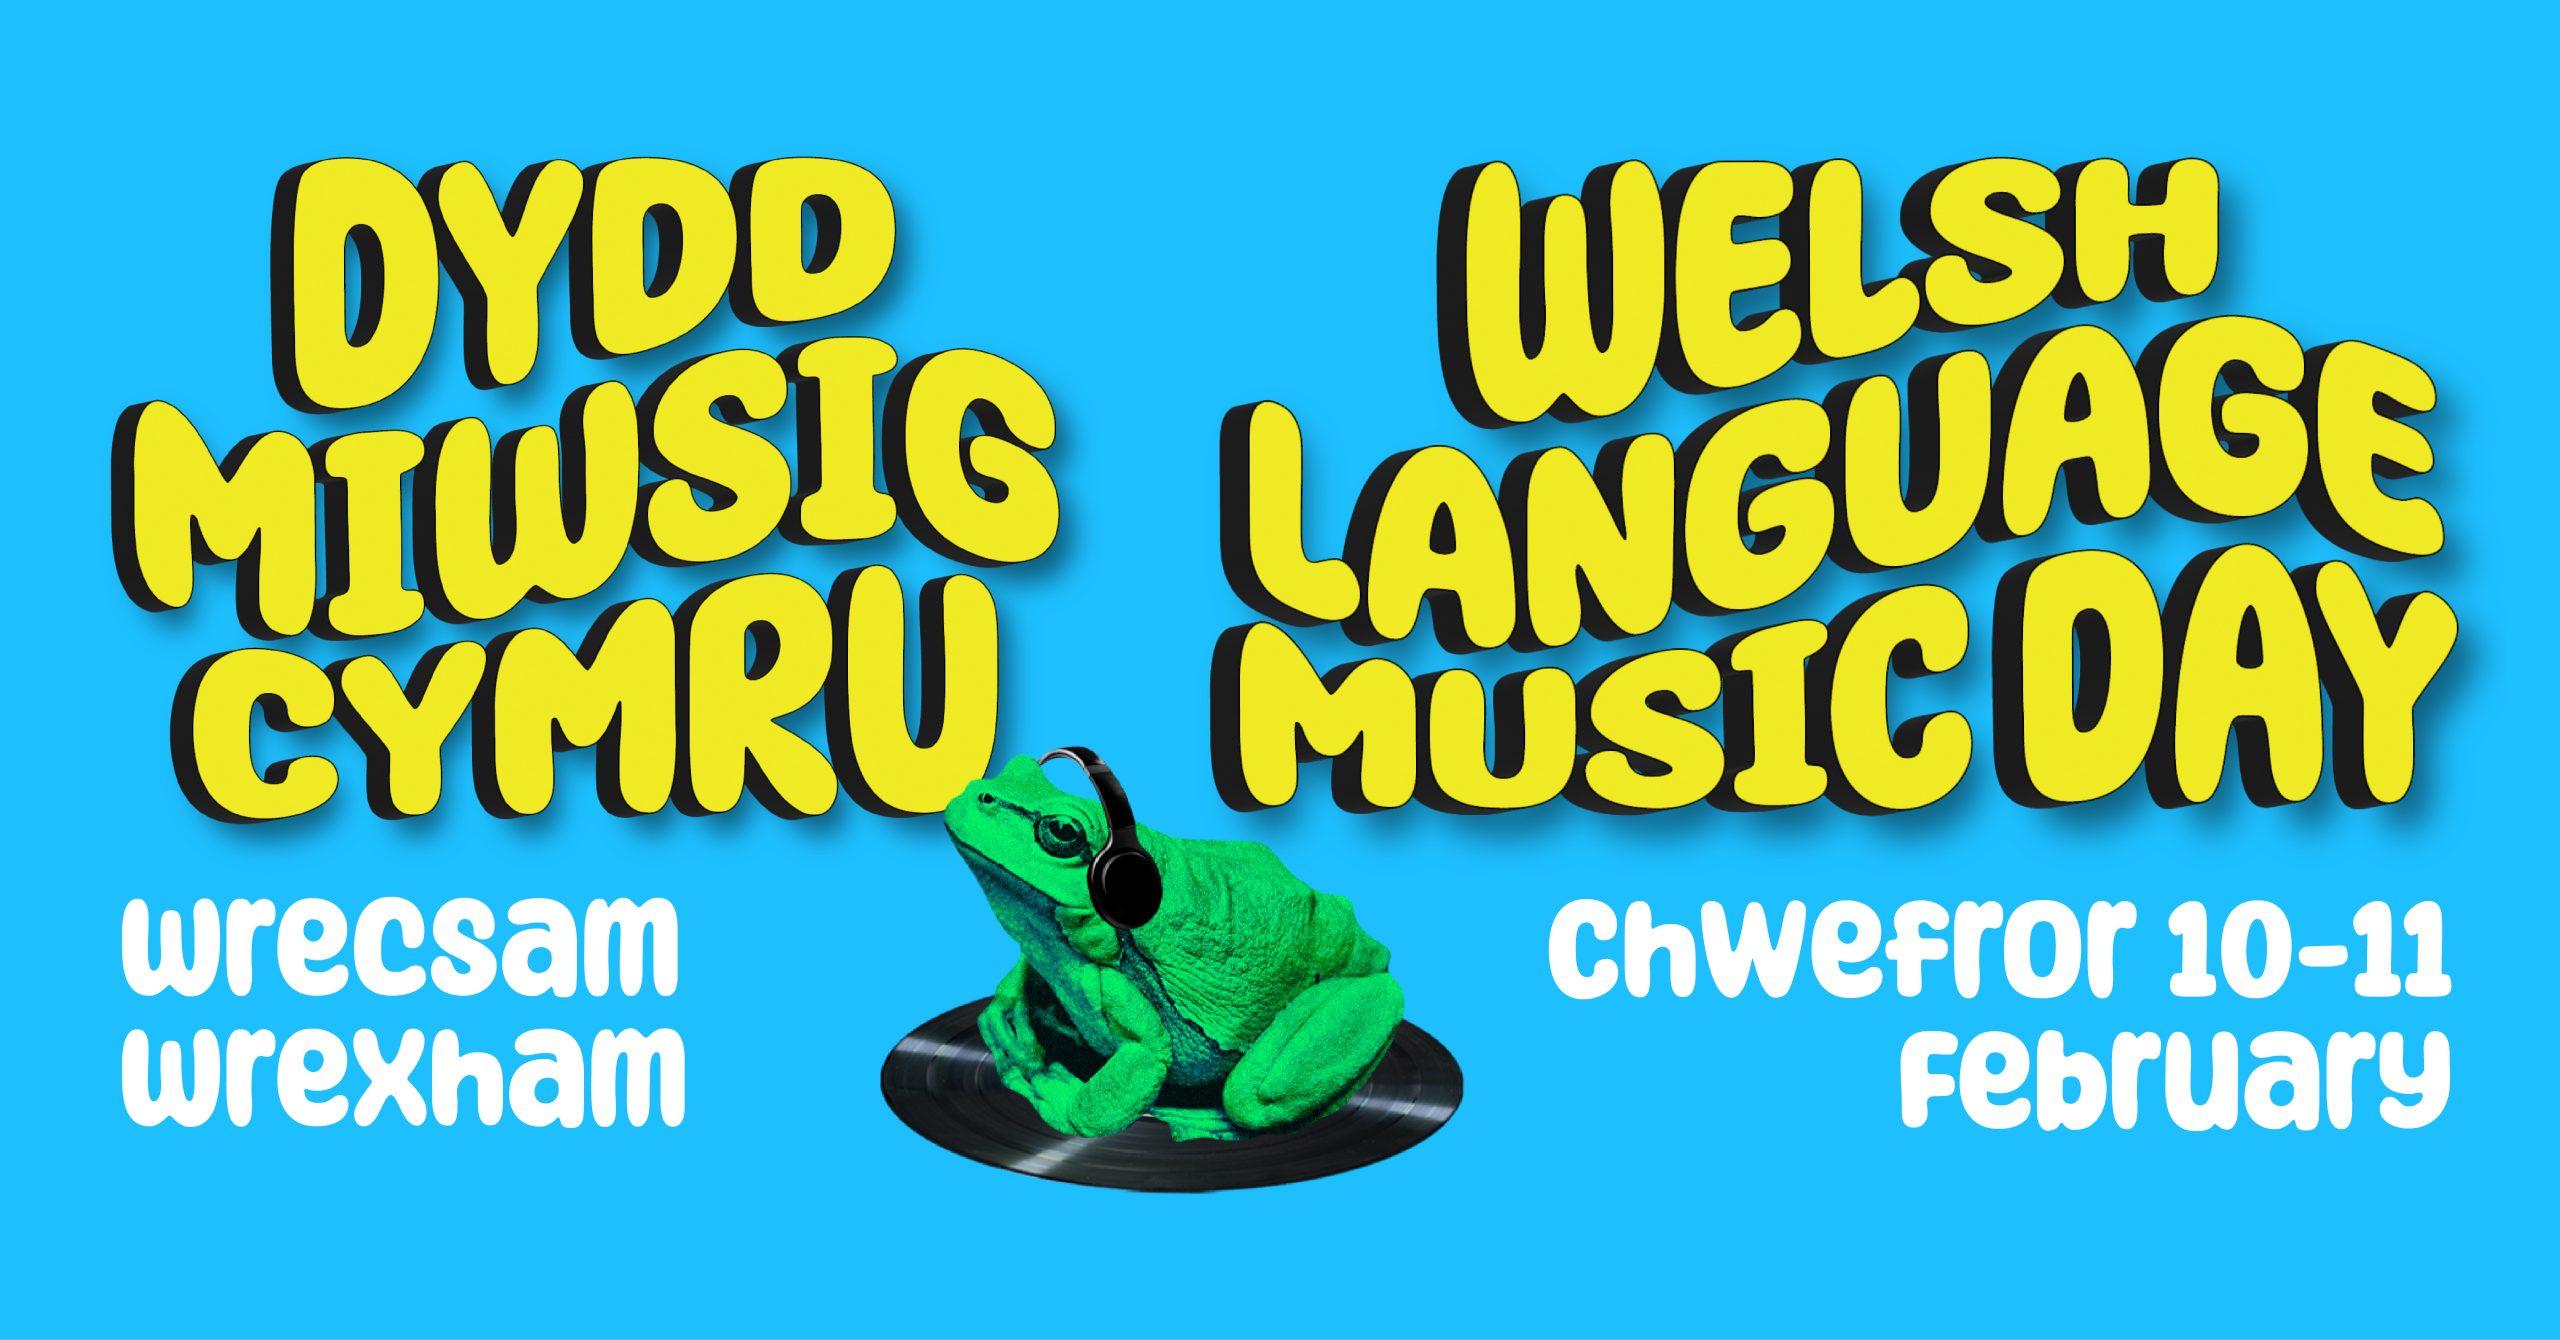 Dydd Miwsig Cymru / Welsh Language Music Day 
Wrecsam/Wrexham
Chwefror 10-11 February